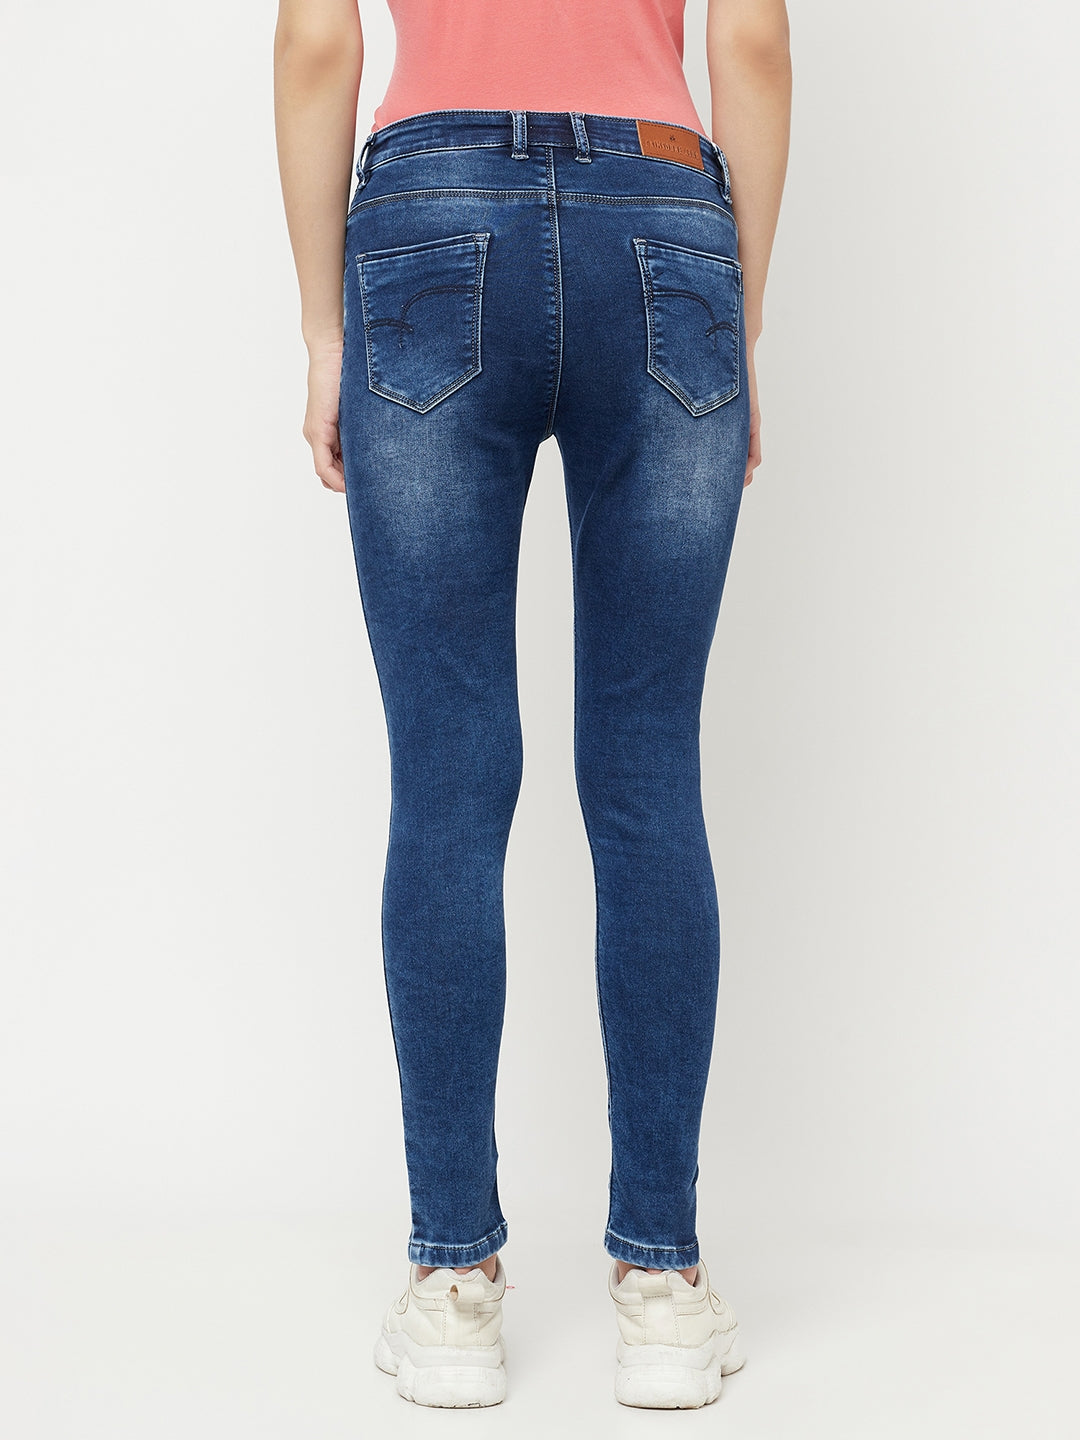 Blue Light Fade Jeans - Women Jeans